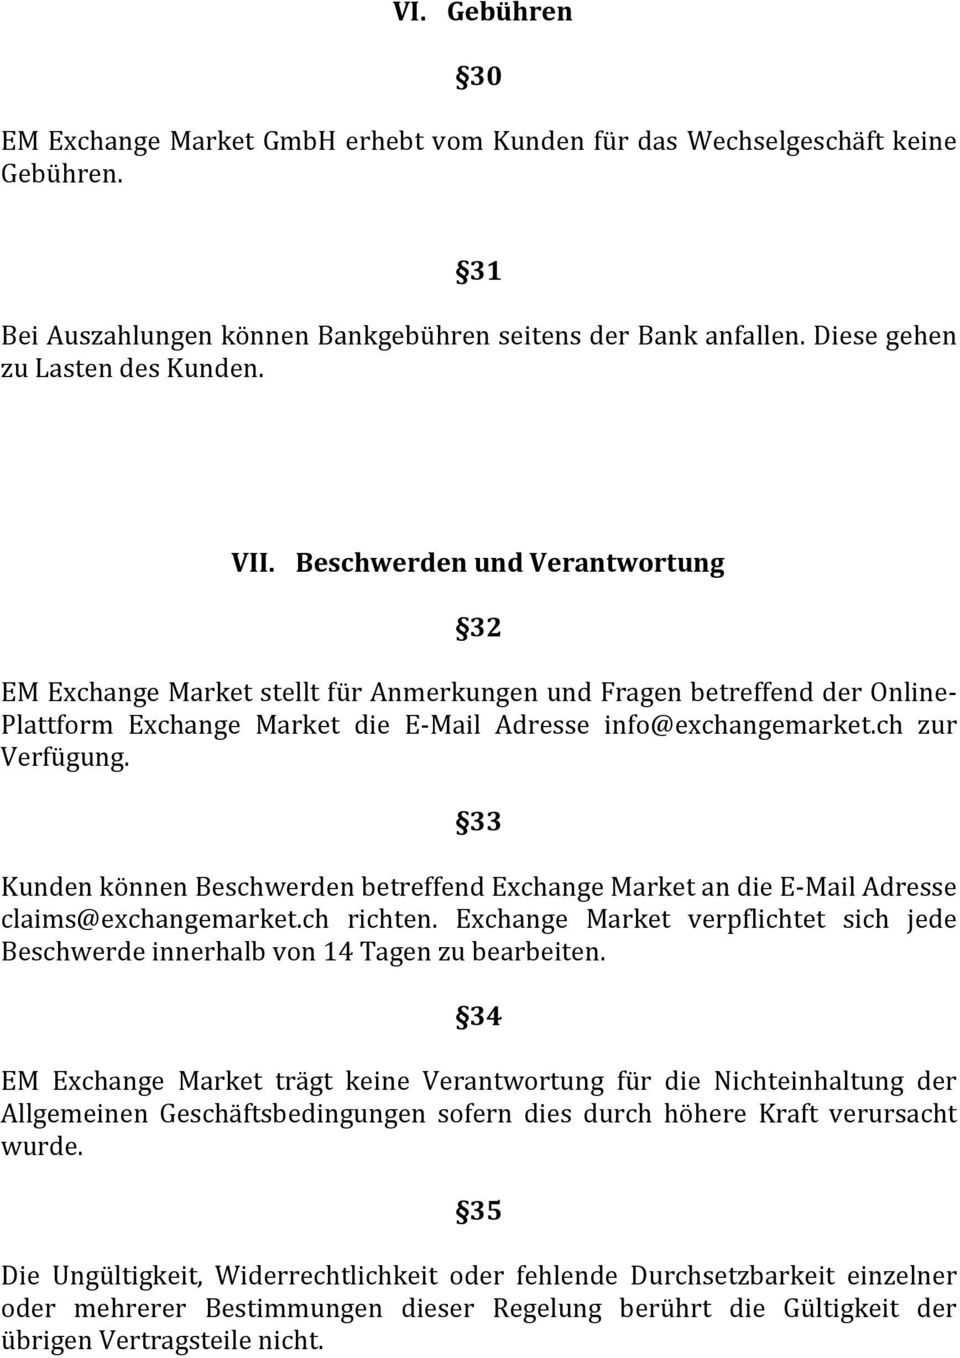 33 Kunden können Beschwerden betreffend Exchange Market an die EMail Adresse claims@exchangemarket.ch richten. Exchange Market verpflichtet sich jede Beschwerde innerhalb von 14 Tagen zu bearbeiten.